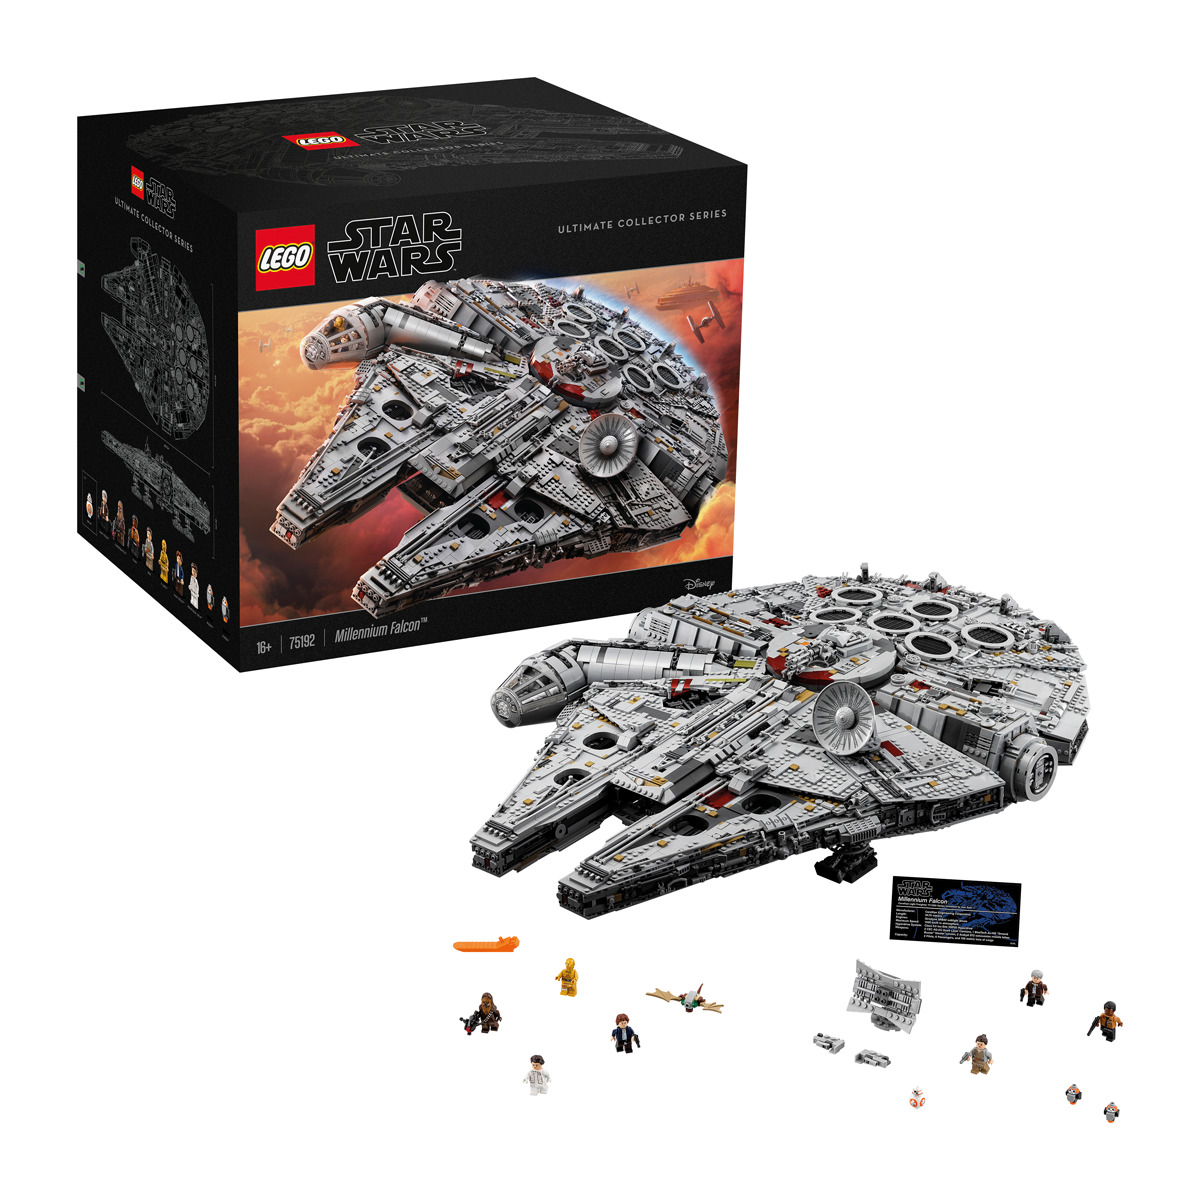 LEGO Halcón Milenario Star Wars solo 559,3€